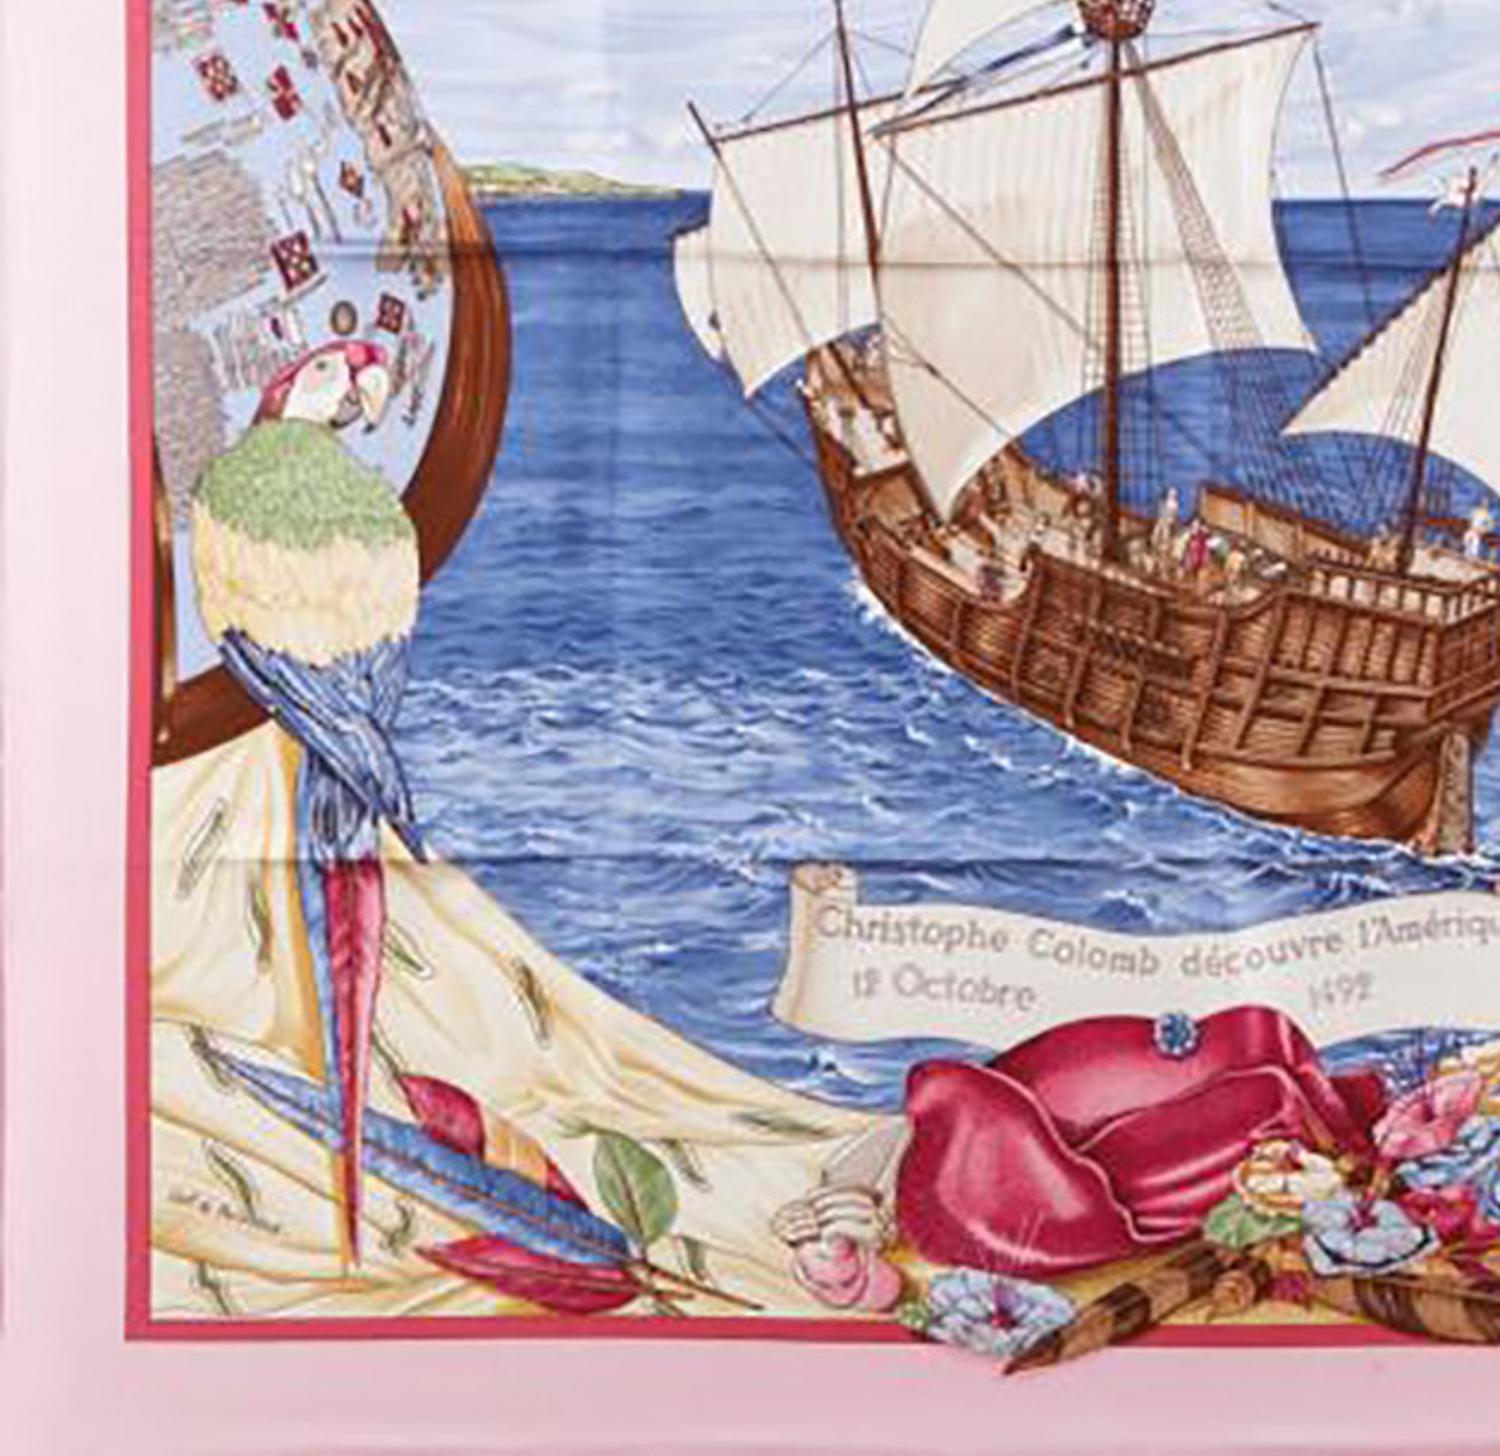 1992 Hermes C.Colomb Decouvre l Amerique by C.de Percevaux Pink Silk Scarf 1